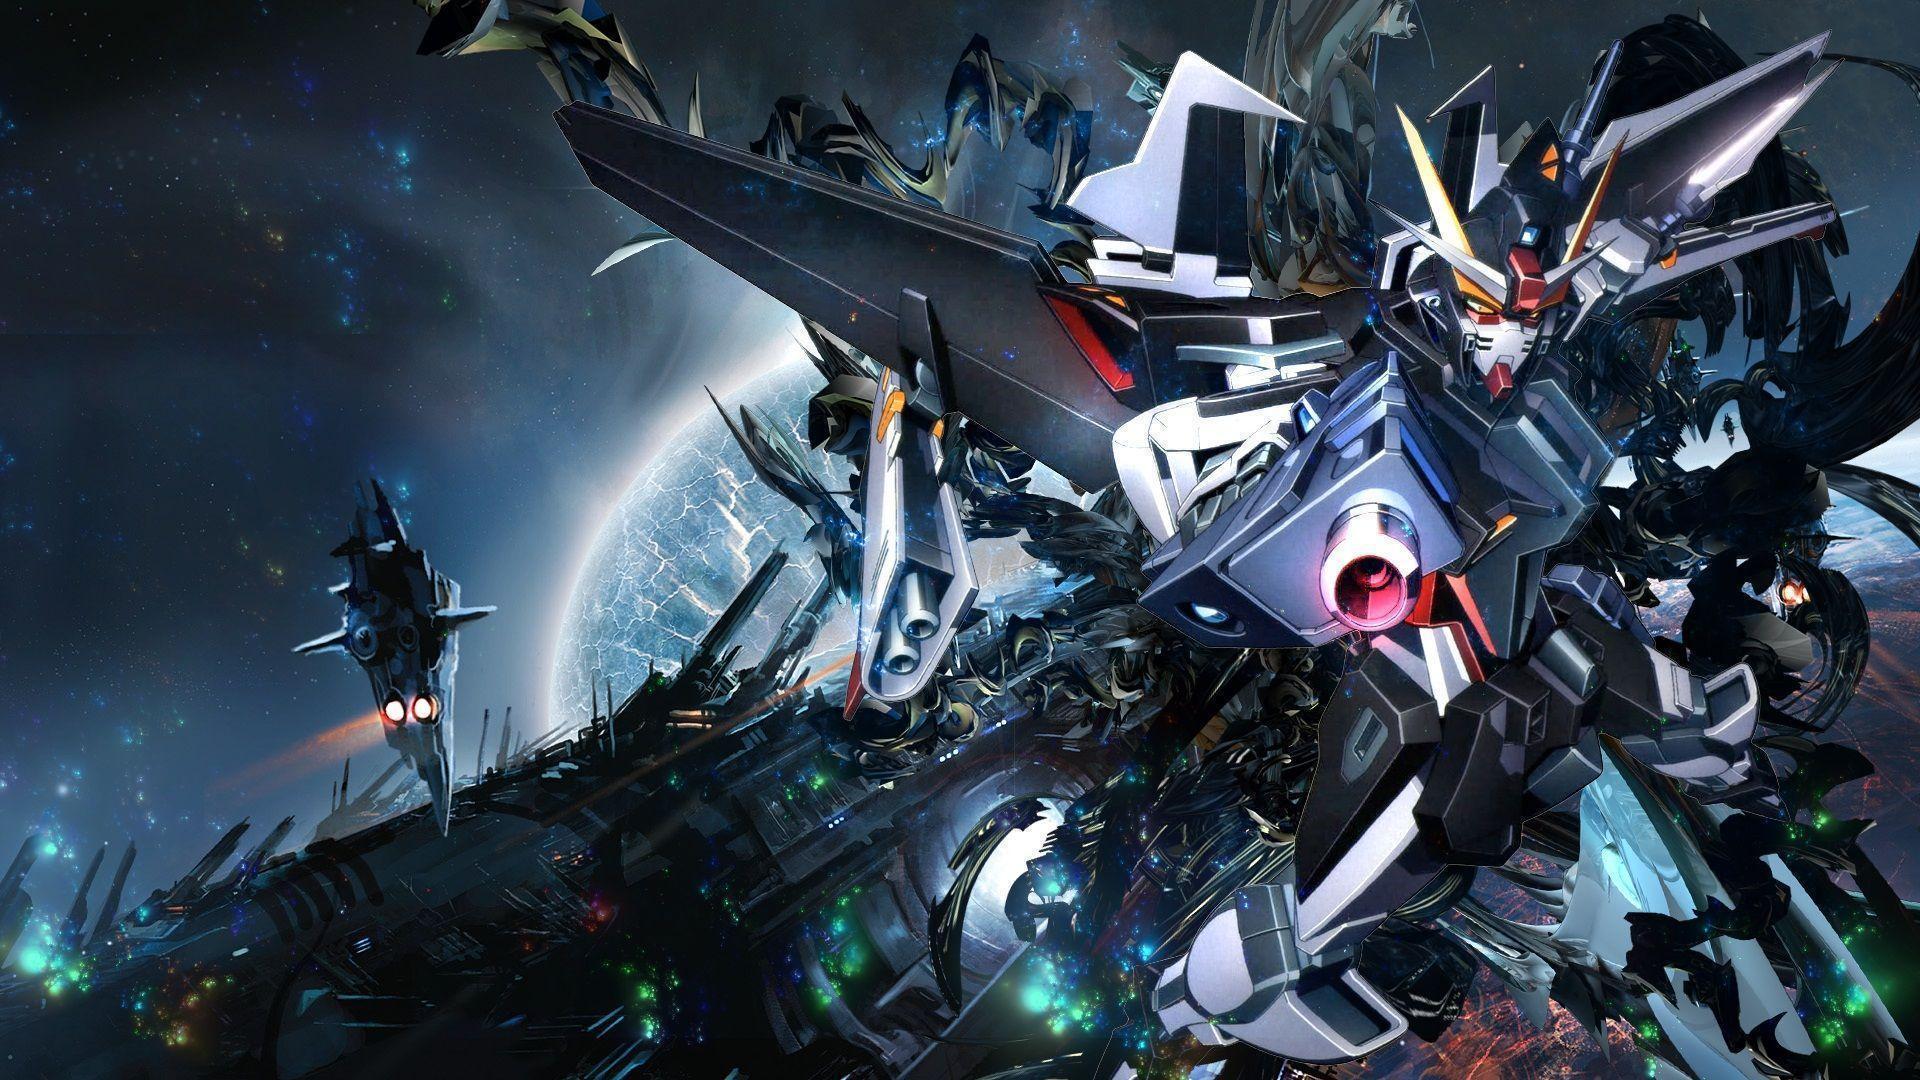 image For > Wing Gundam Zero Ew Wallpaper